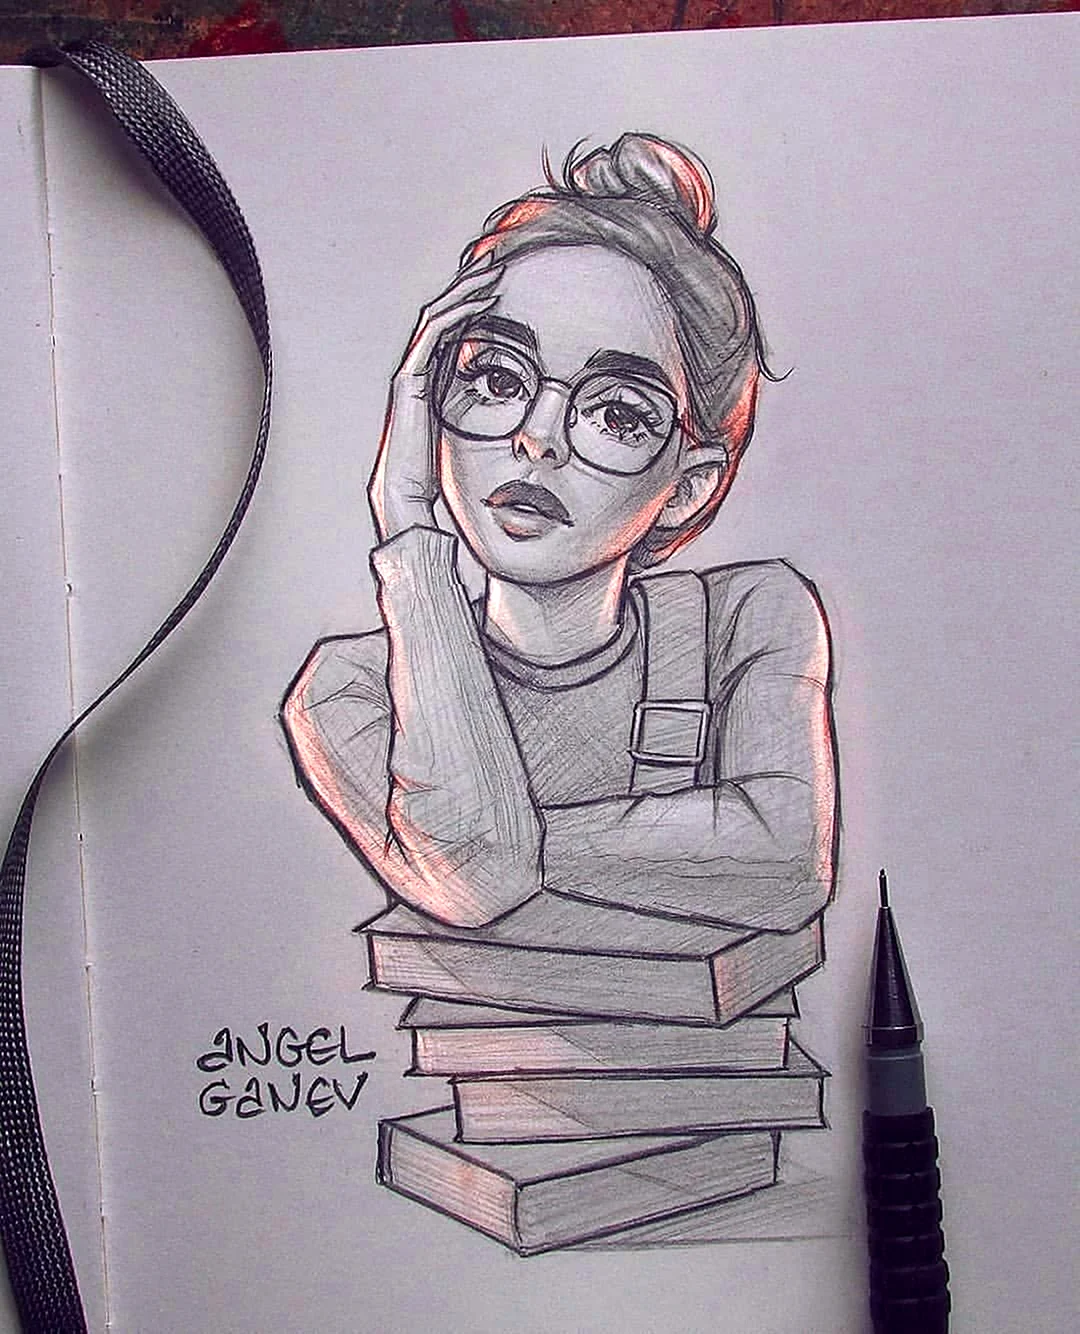 Девушка в очках рисунок карандашом